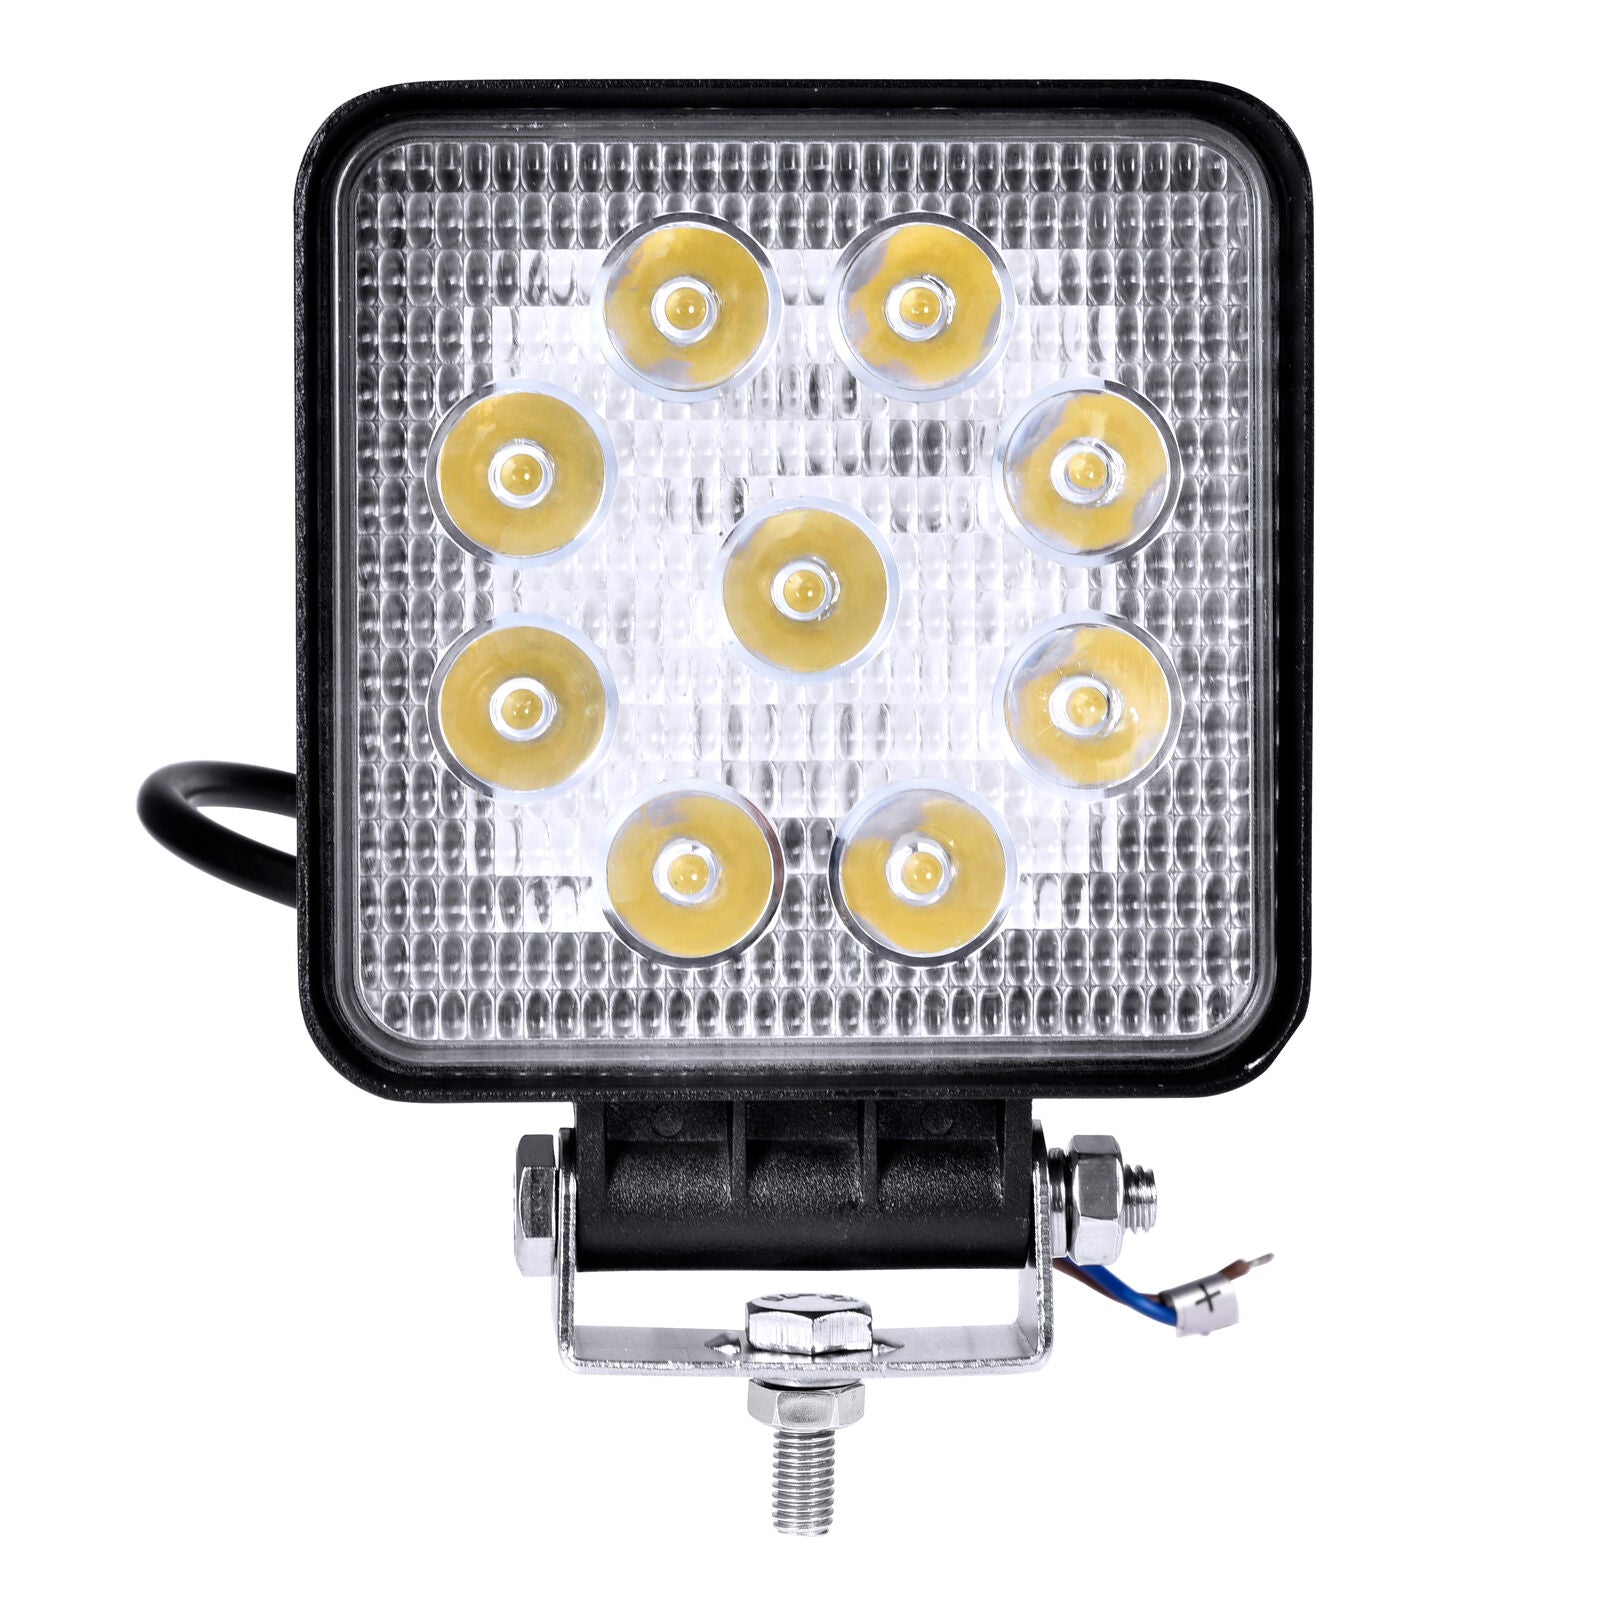 UDSALG - LED køretøjs projektør 27 watt 12/24 volt - Square, SUPER SLIM - Dinled - Køretøjs projektører